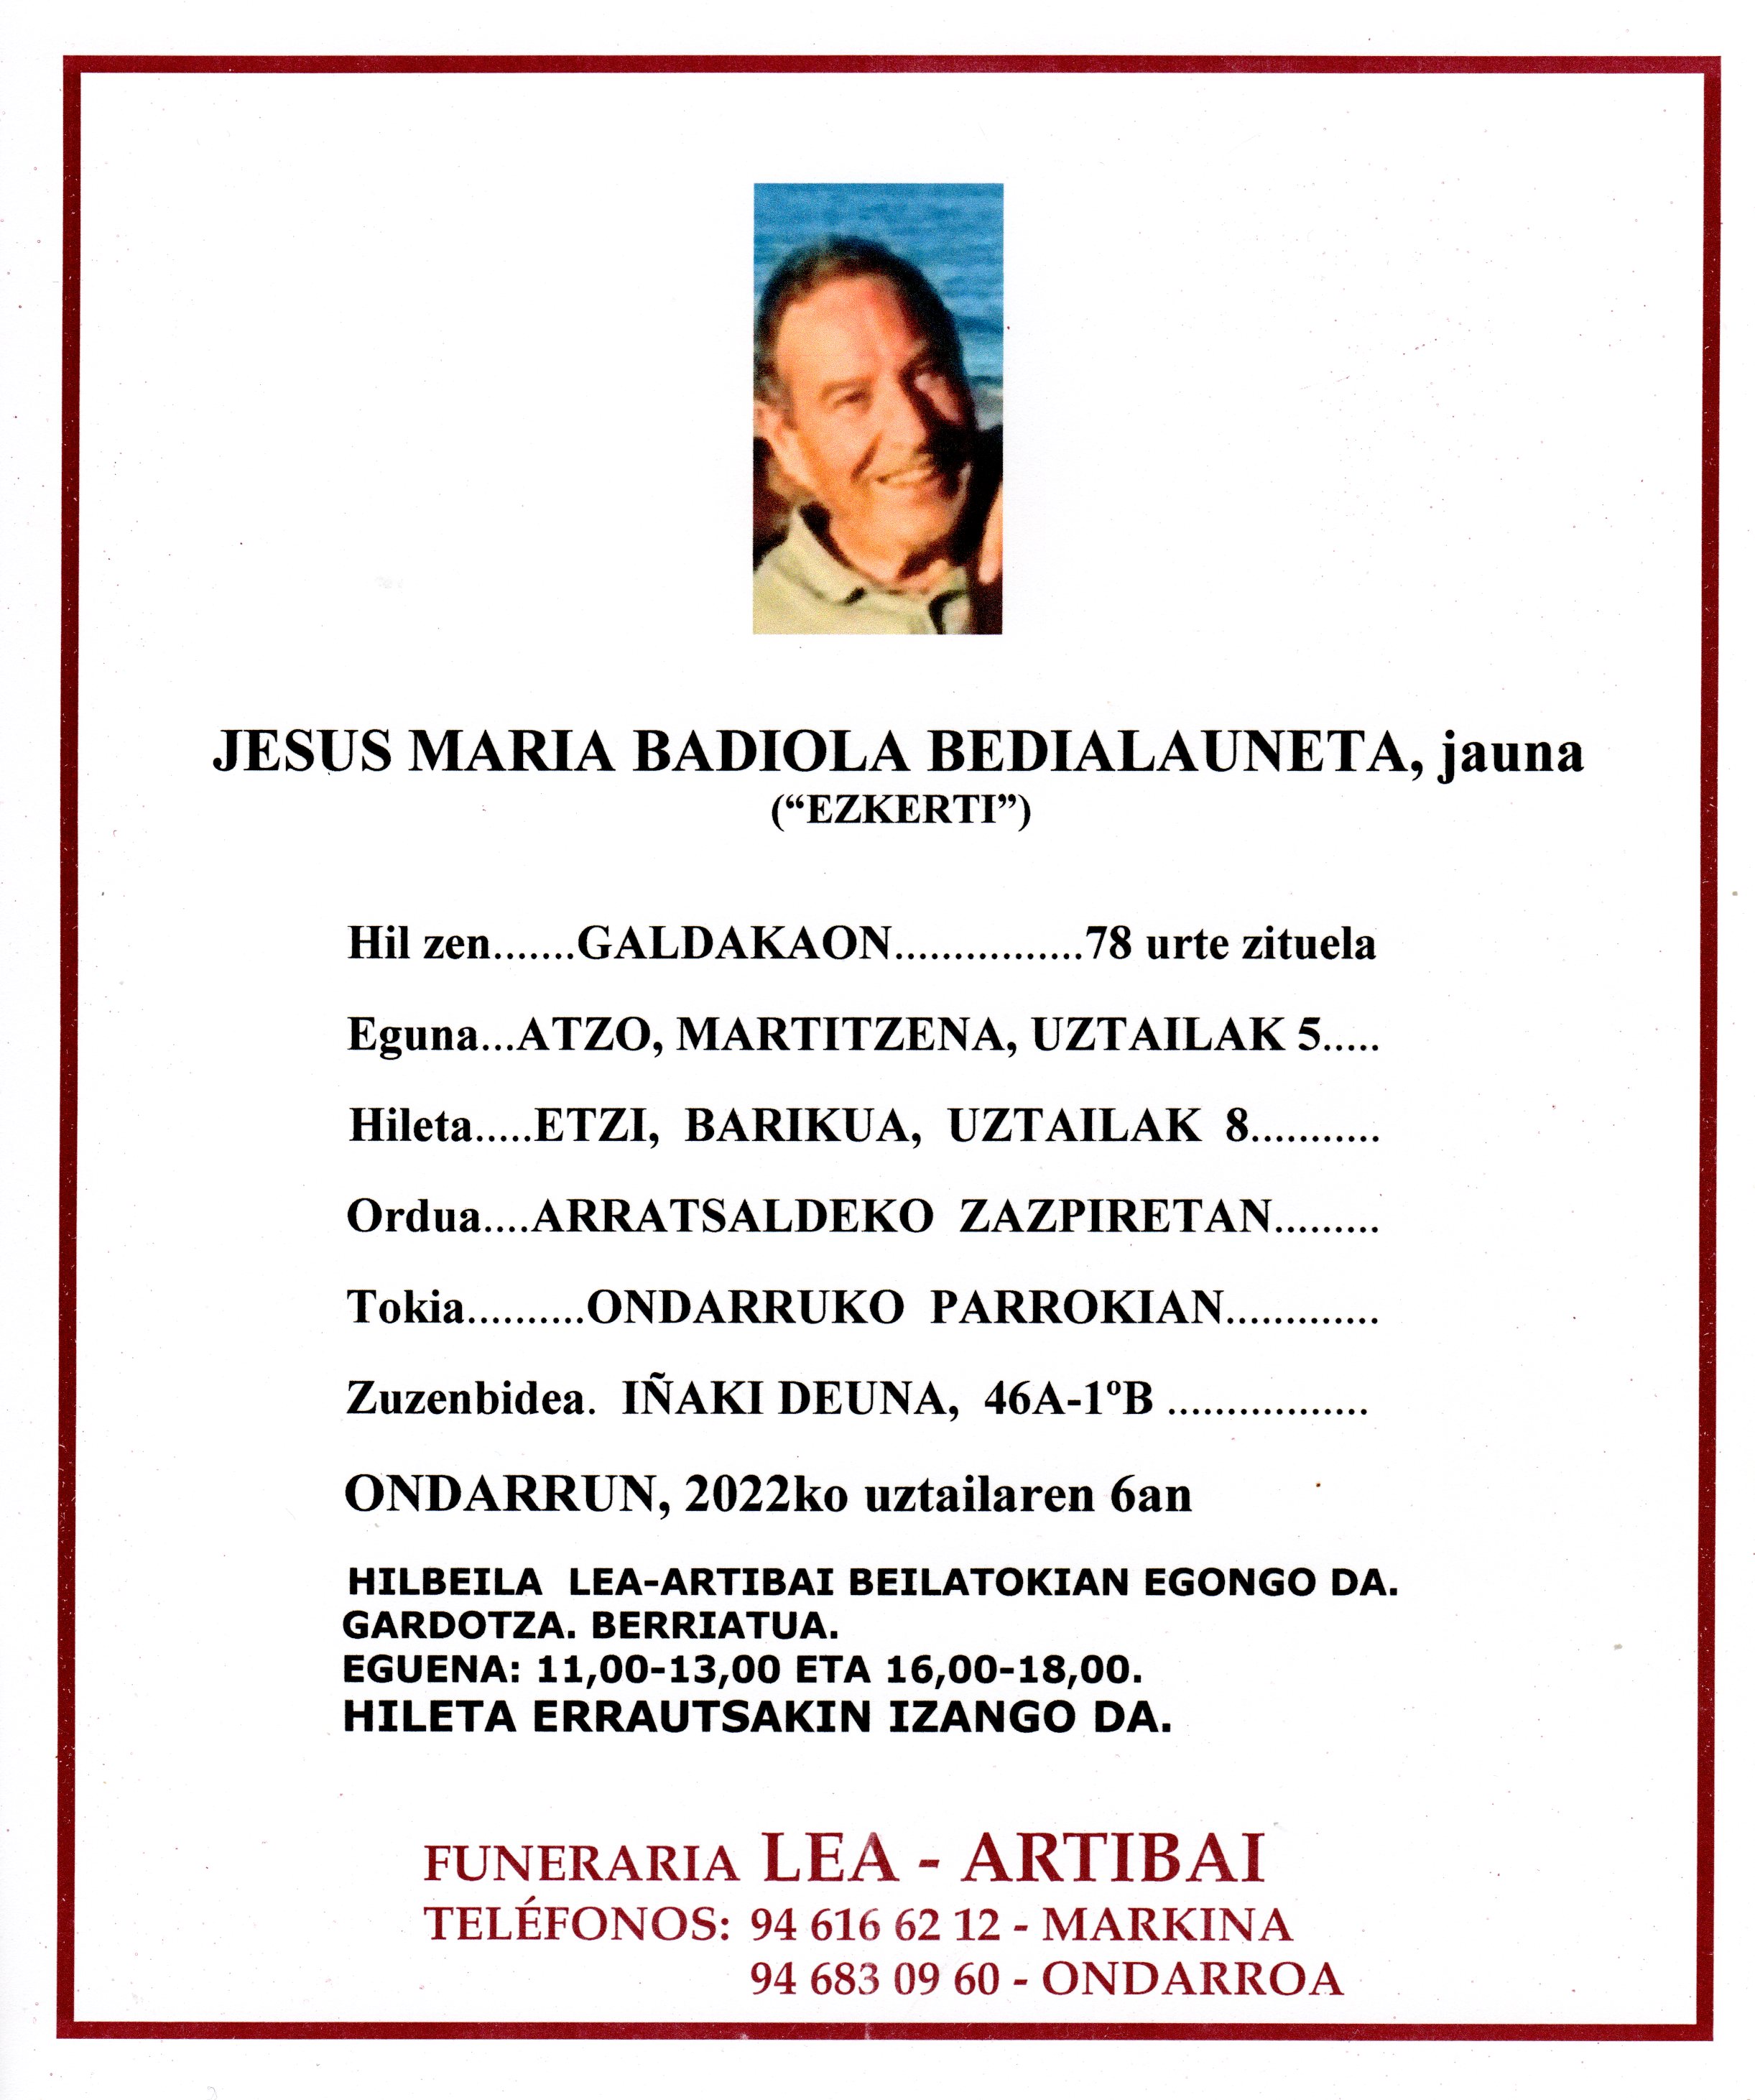 Jesus Maria Badiola Bedialauneta